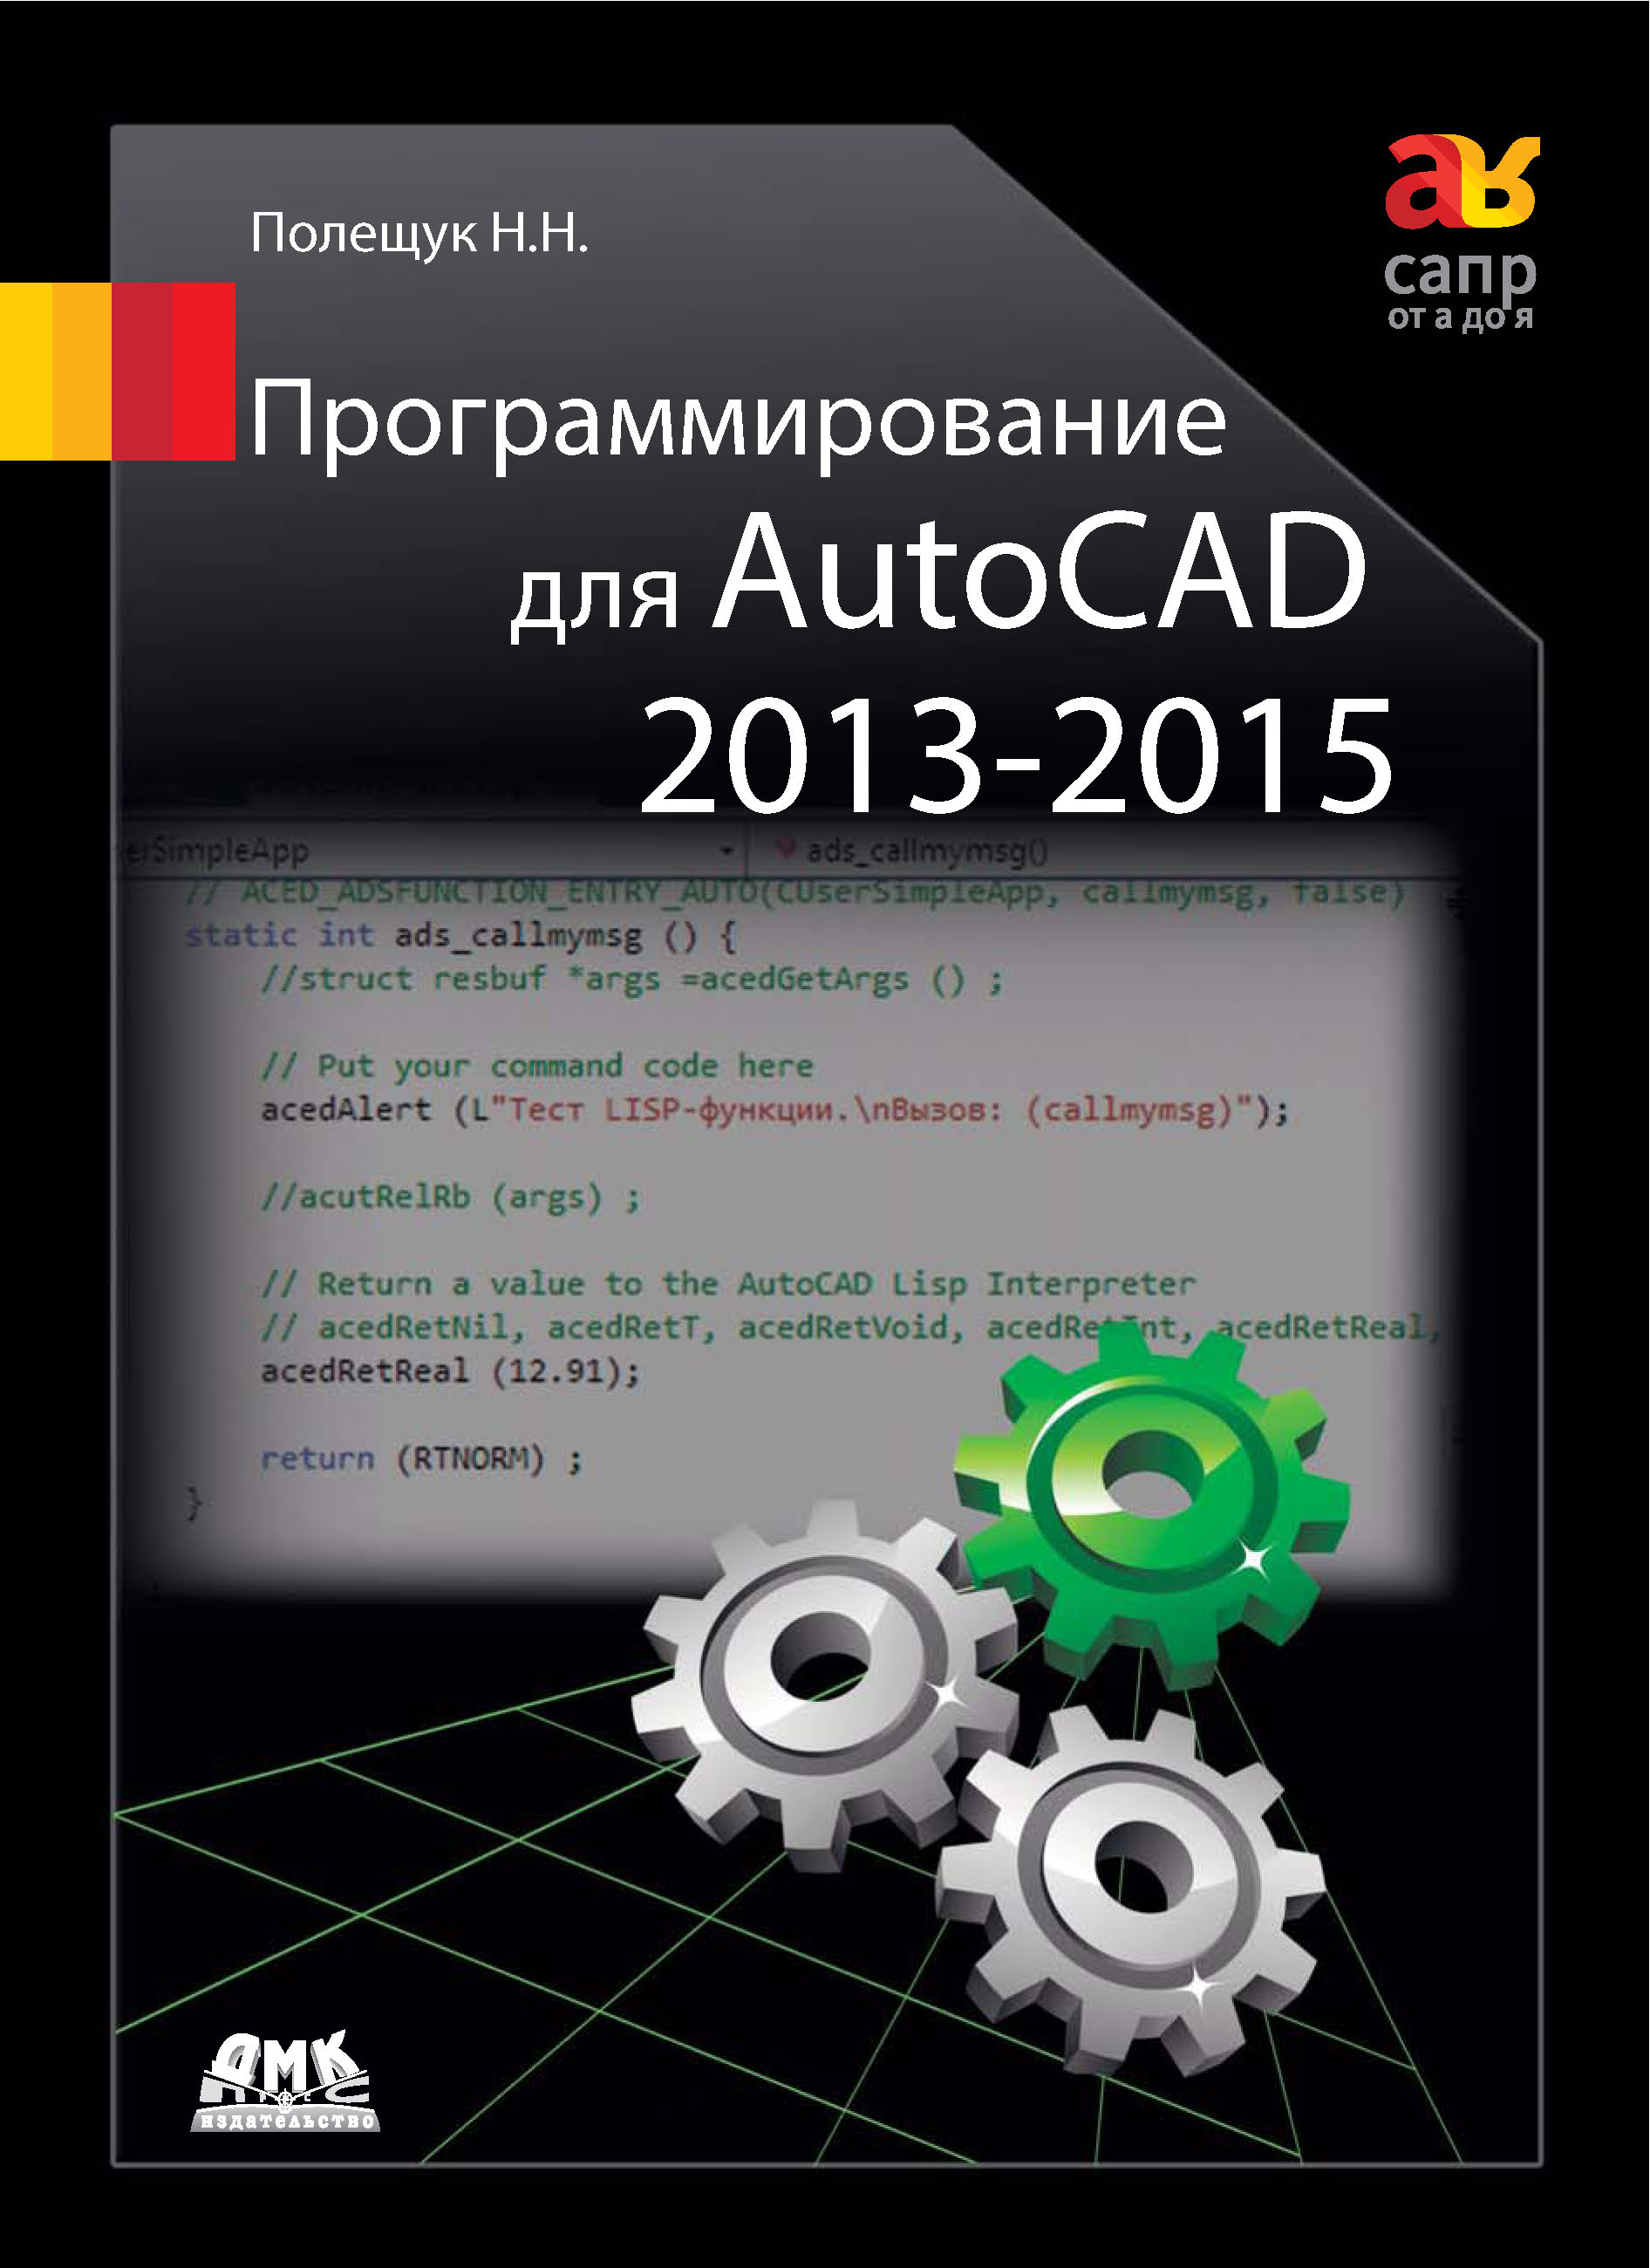 Книга САПР от А до Я Программирование для AutoCAD 2013–2015 созданная Николай Полещук может относится к жанру программирование, программы. Стоимость электронной книги Программирование для AutoCAD 2013–2015 с идентификатором 9998594 составляет 439.00 руб.